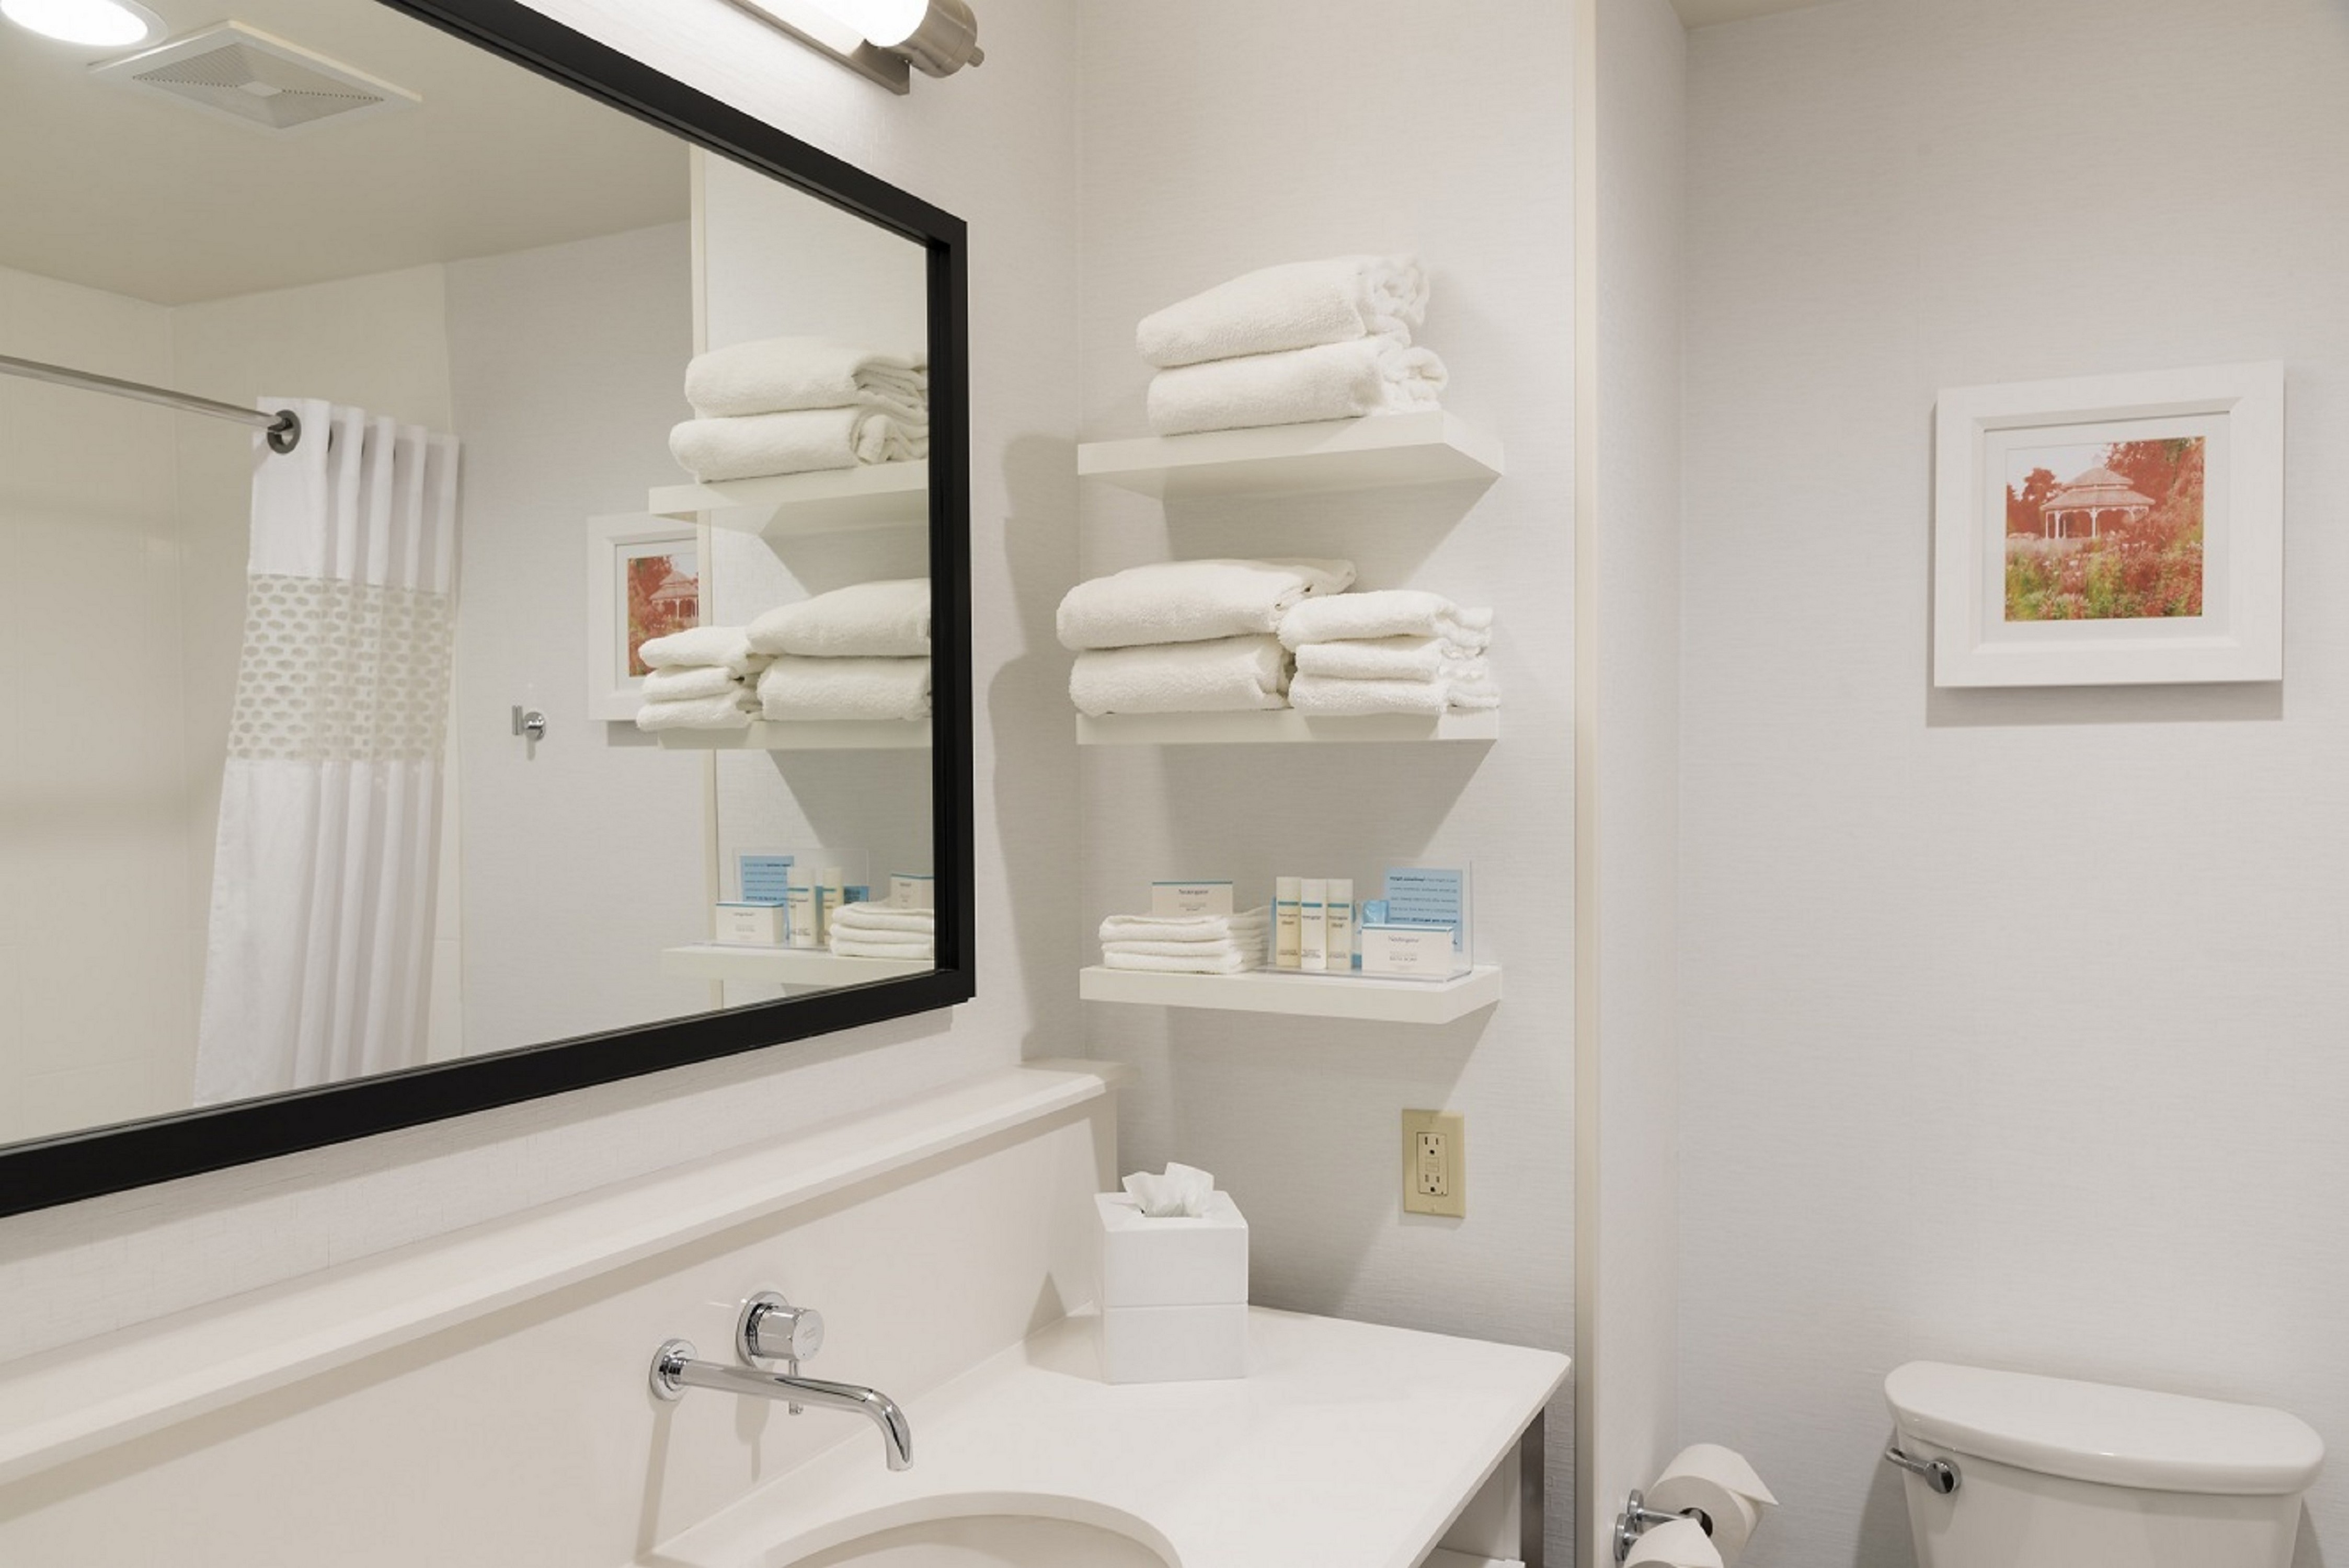 Guest Bathroom Vanity and Towel Shelves